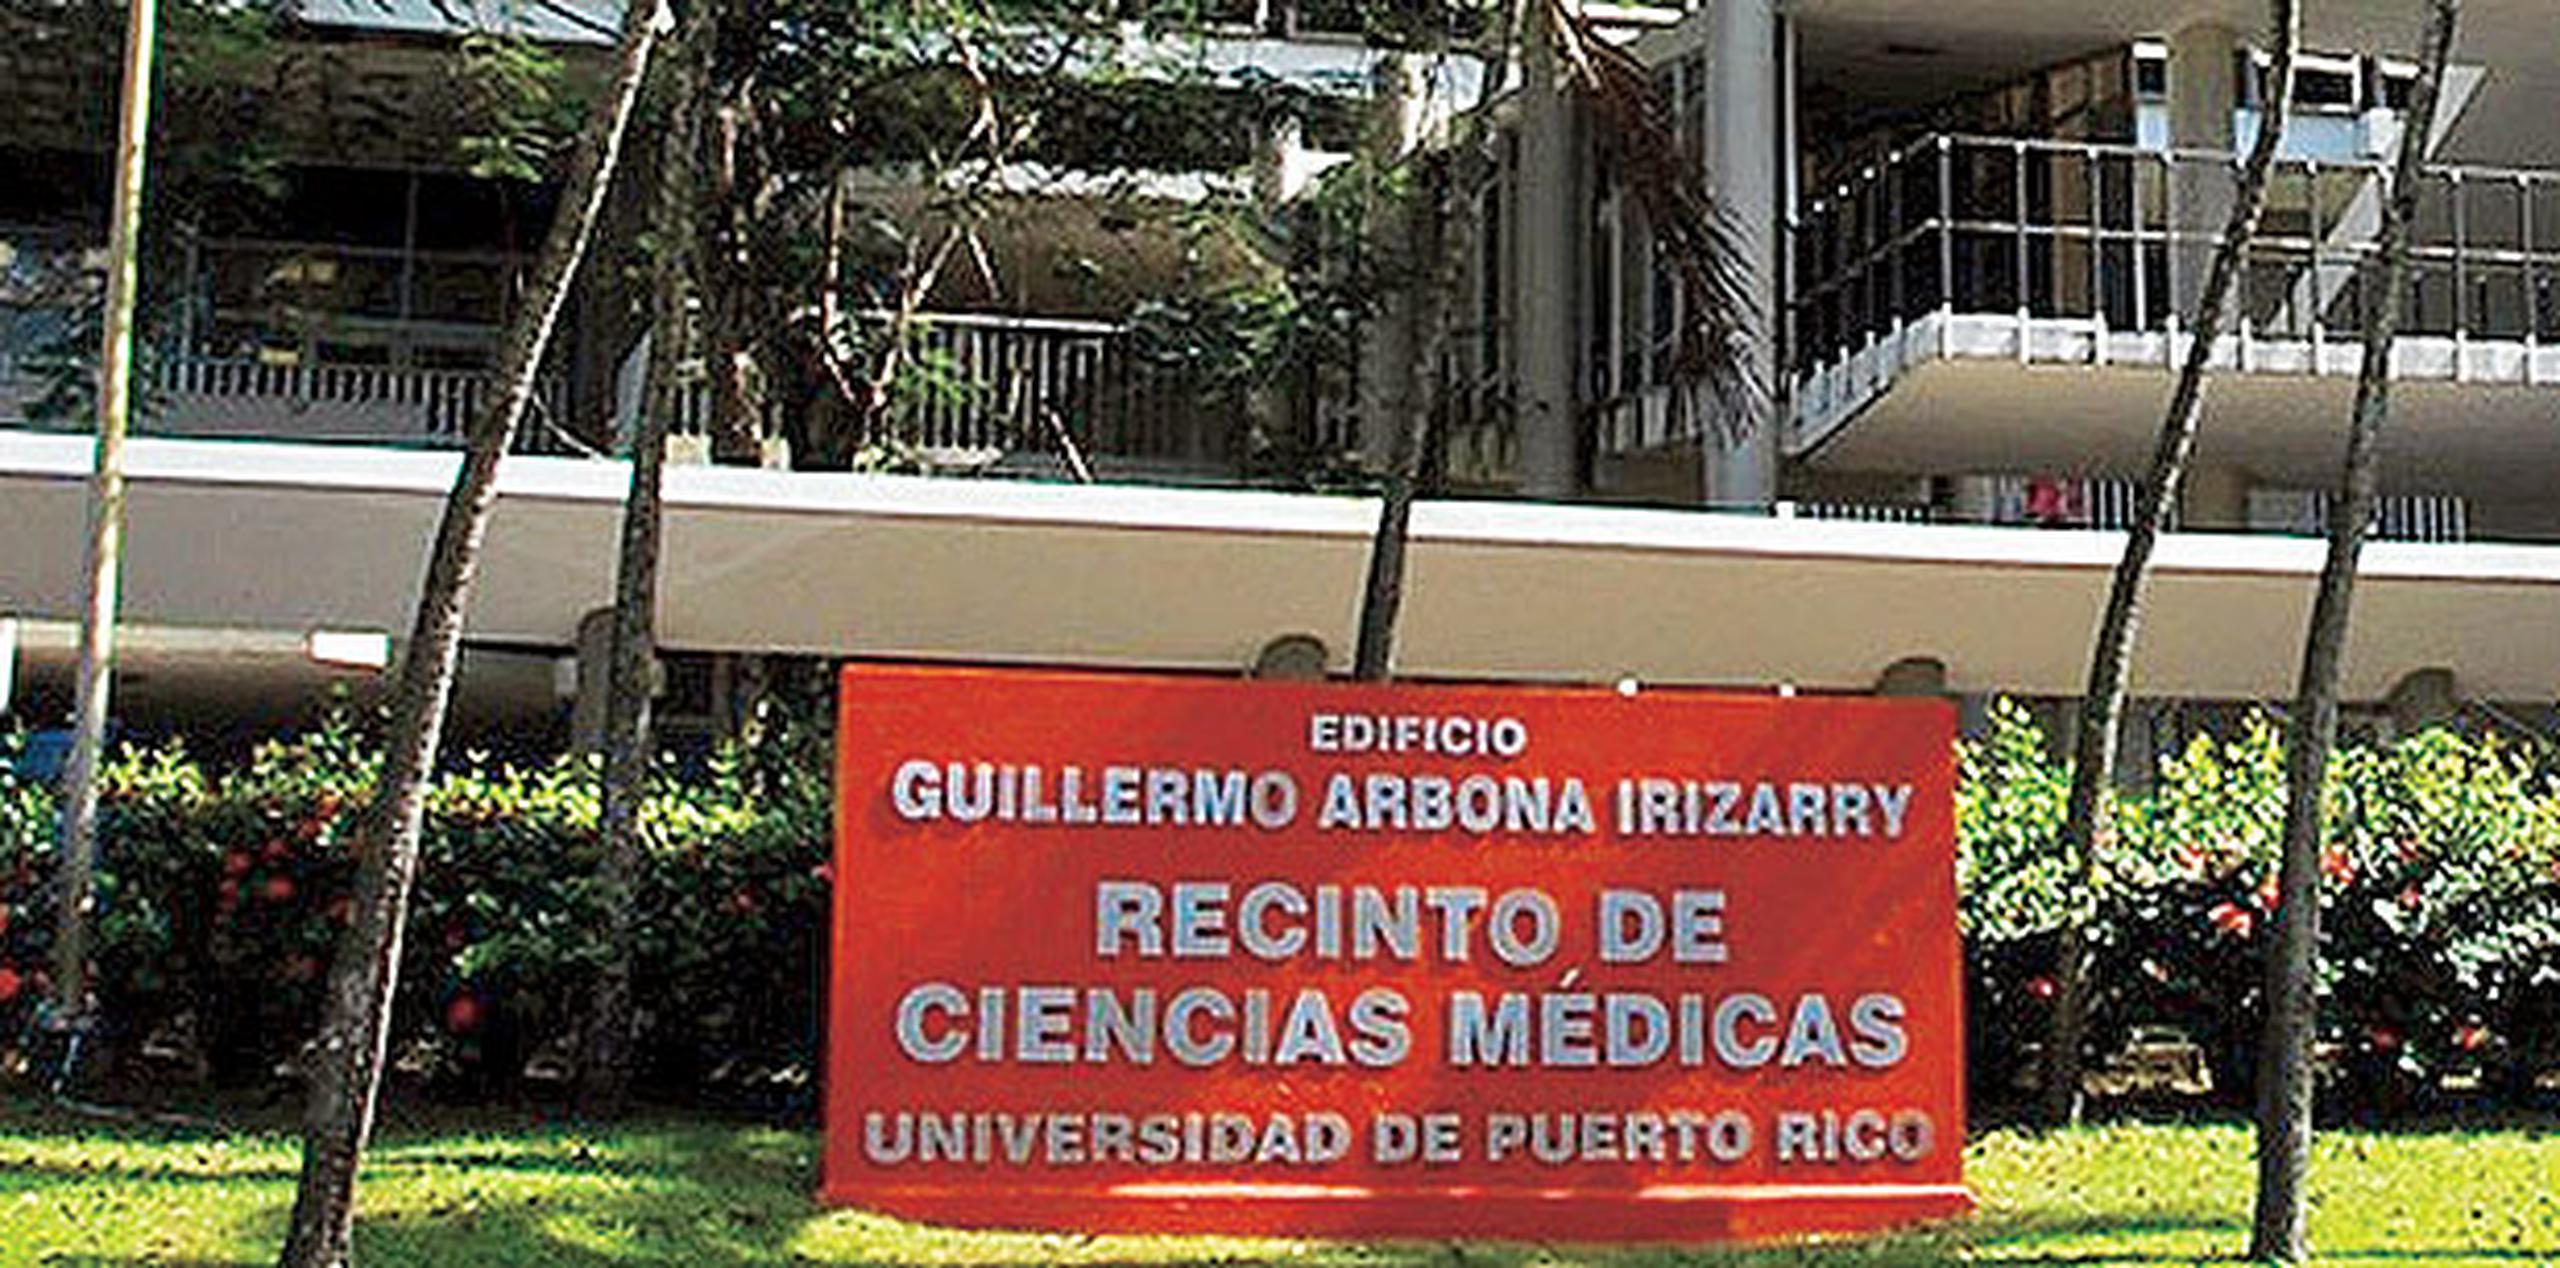 A lo largo de su historia, la Escuela de Medicina se ha destacado por ser el principal proveedor de servicios del sistema de salud del País. (Archivo)